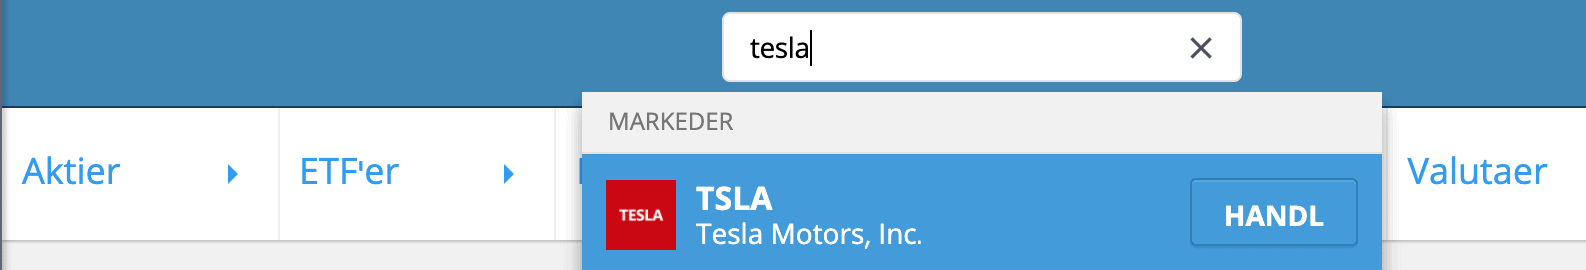 Soeg Efter Tesla Aktier